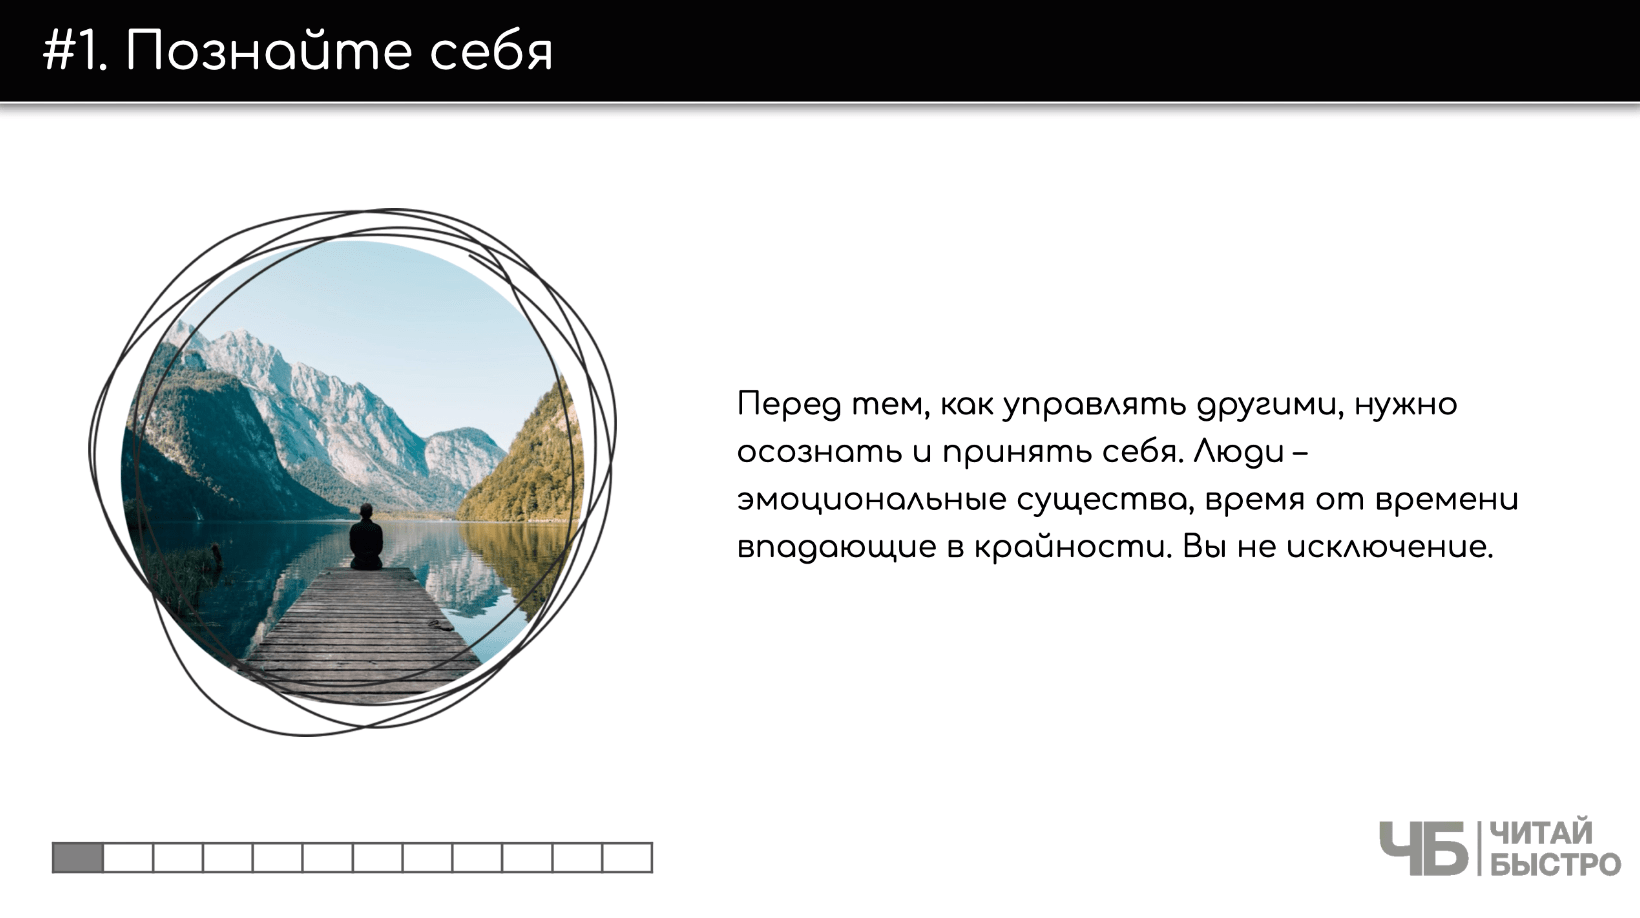 На этом слайде изображен тезис о том, что нужно познать себя и иллюстрация человека на реке в горах.